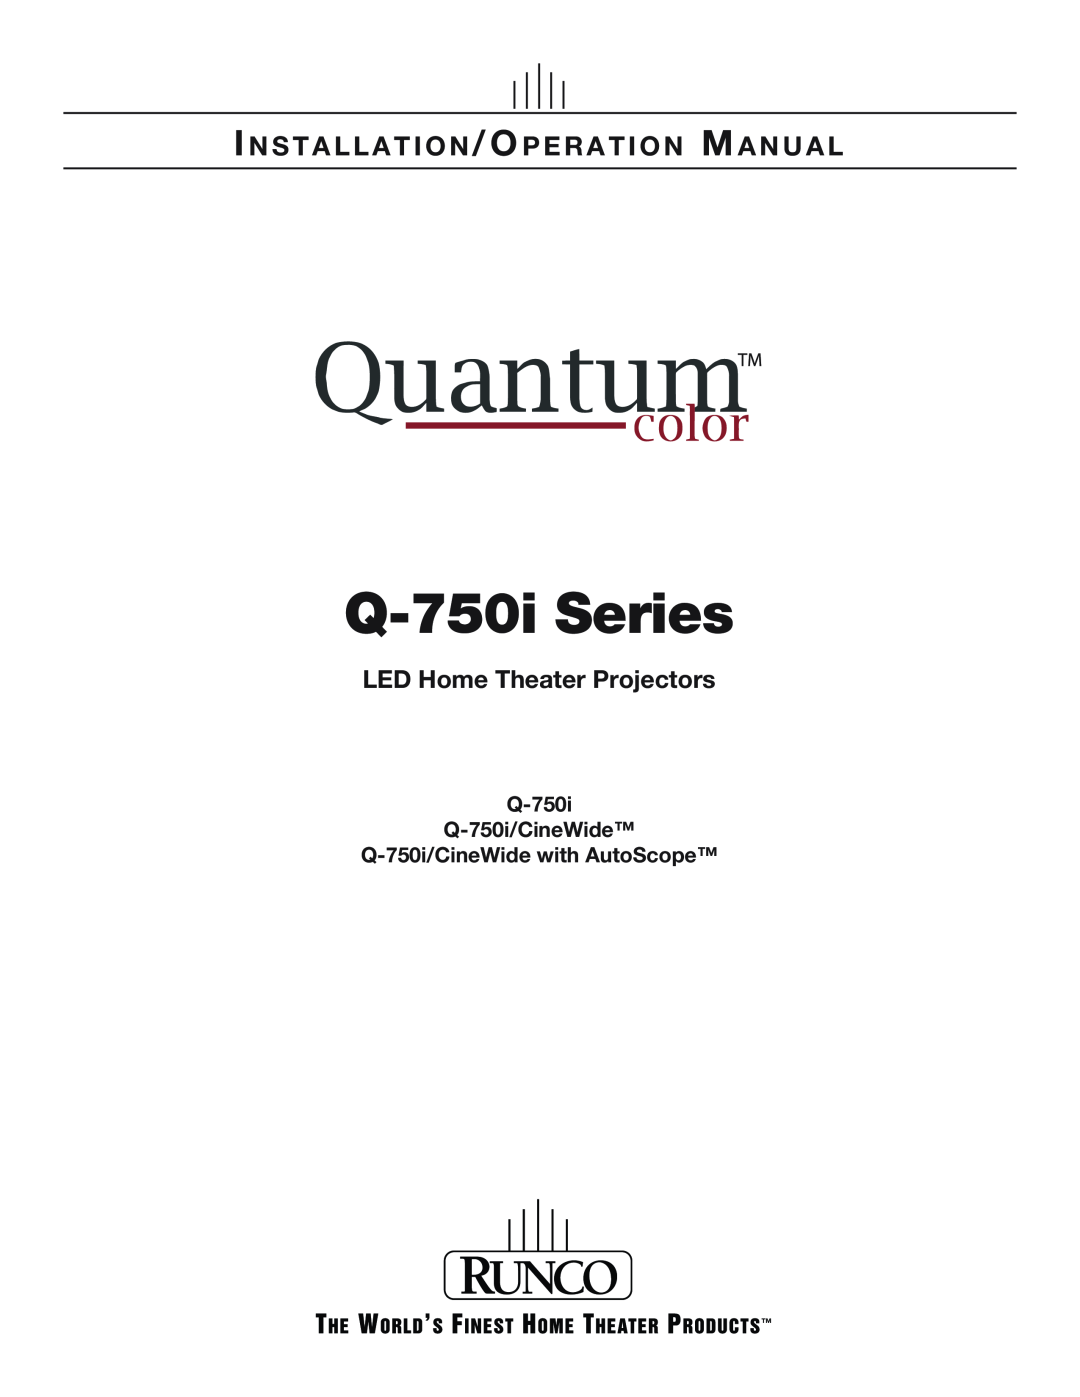 Runco Q-750I operation manual Q-750i Q-750i/CineWide, Q-750i/CineWidewith AutoScope, Q-750iSeries 